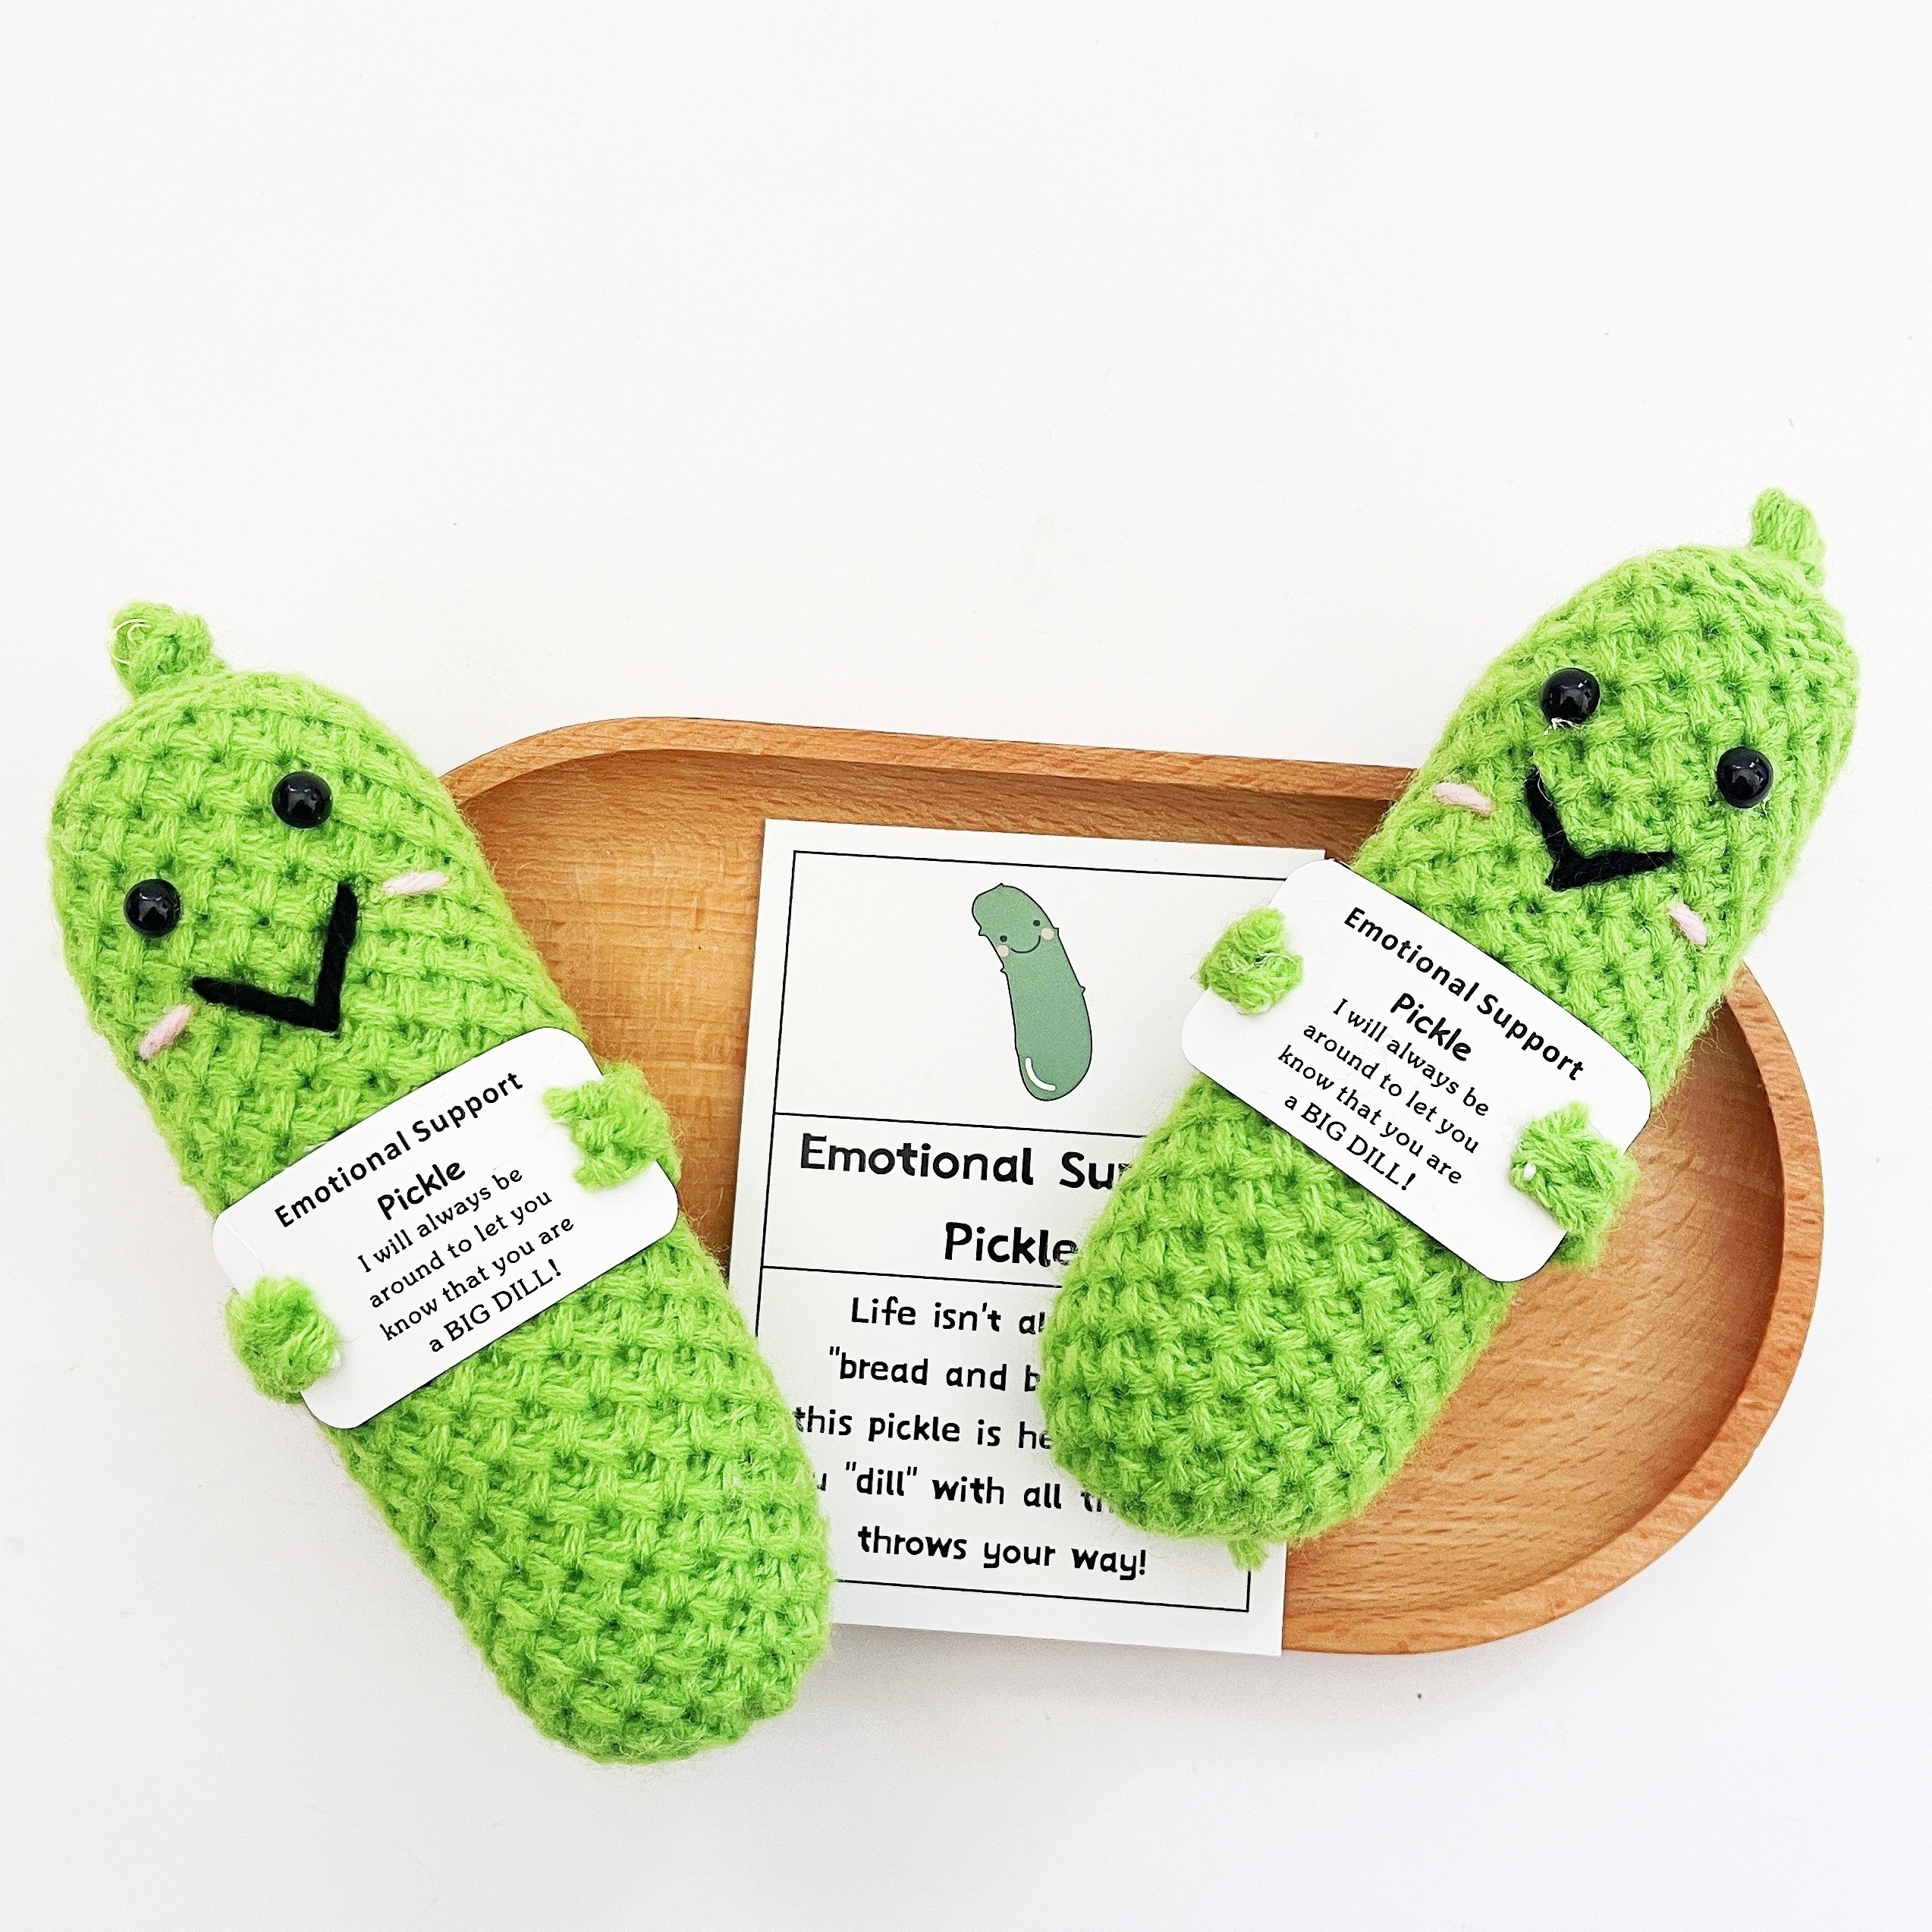 Cadeau de concombre mariné fait à la main - Jolie poupée de concombre  tricotée avec carte d'affirmation positive, jouet amusant pour soulager le  stress - Décoration de bureau - Cadeau idéal pour